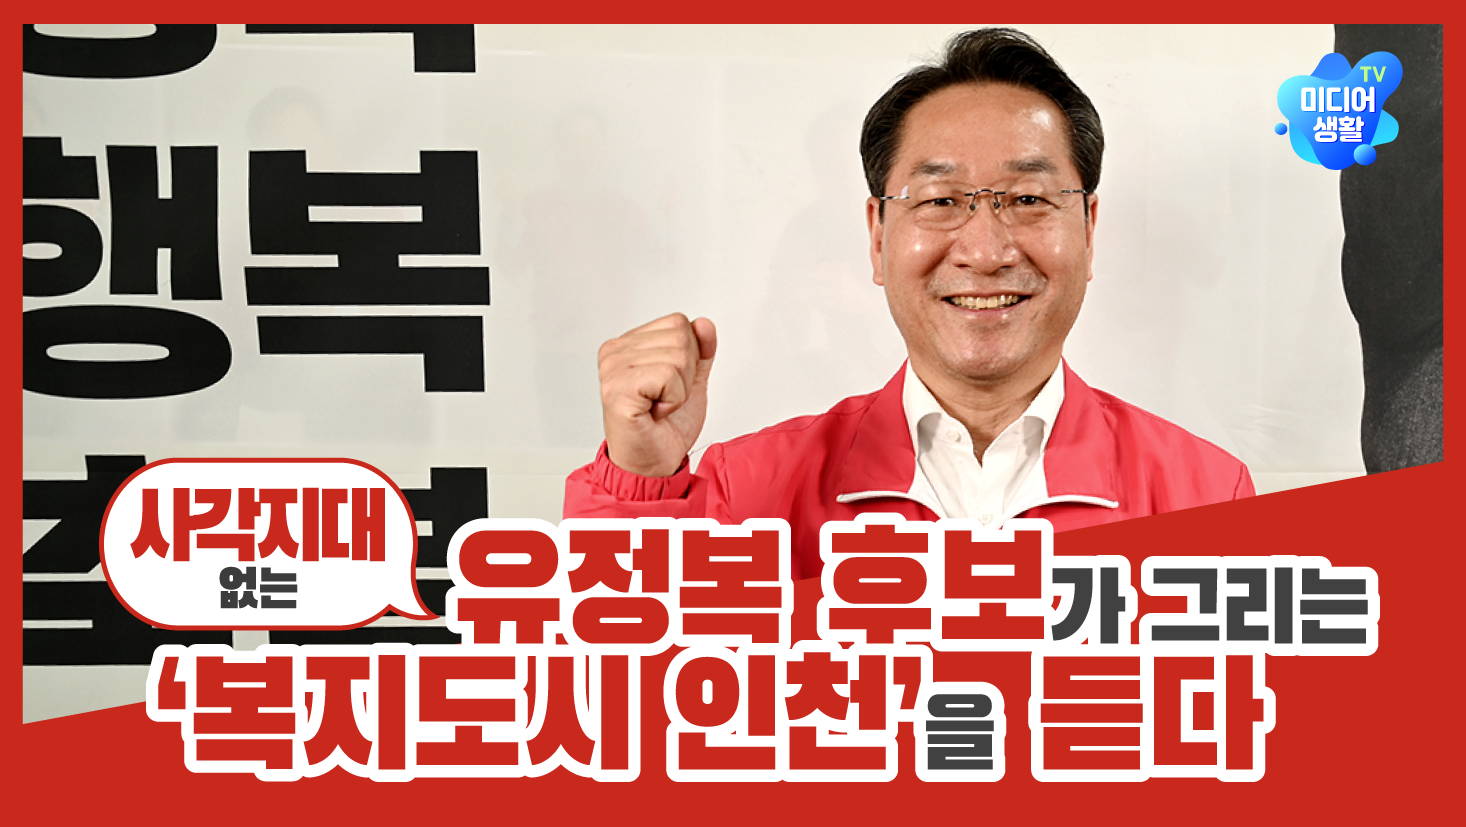 [2022 6.1 지방선거] 유정복 후보가 그리는 ‘사각지대 없는 복지도시 인천’을 듣다